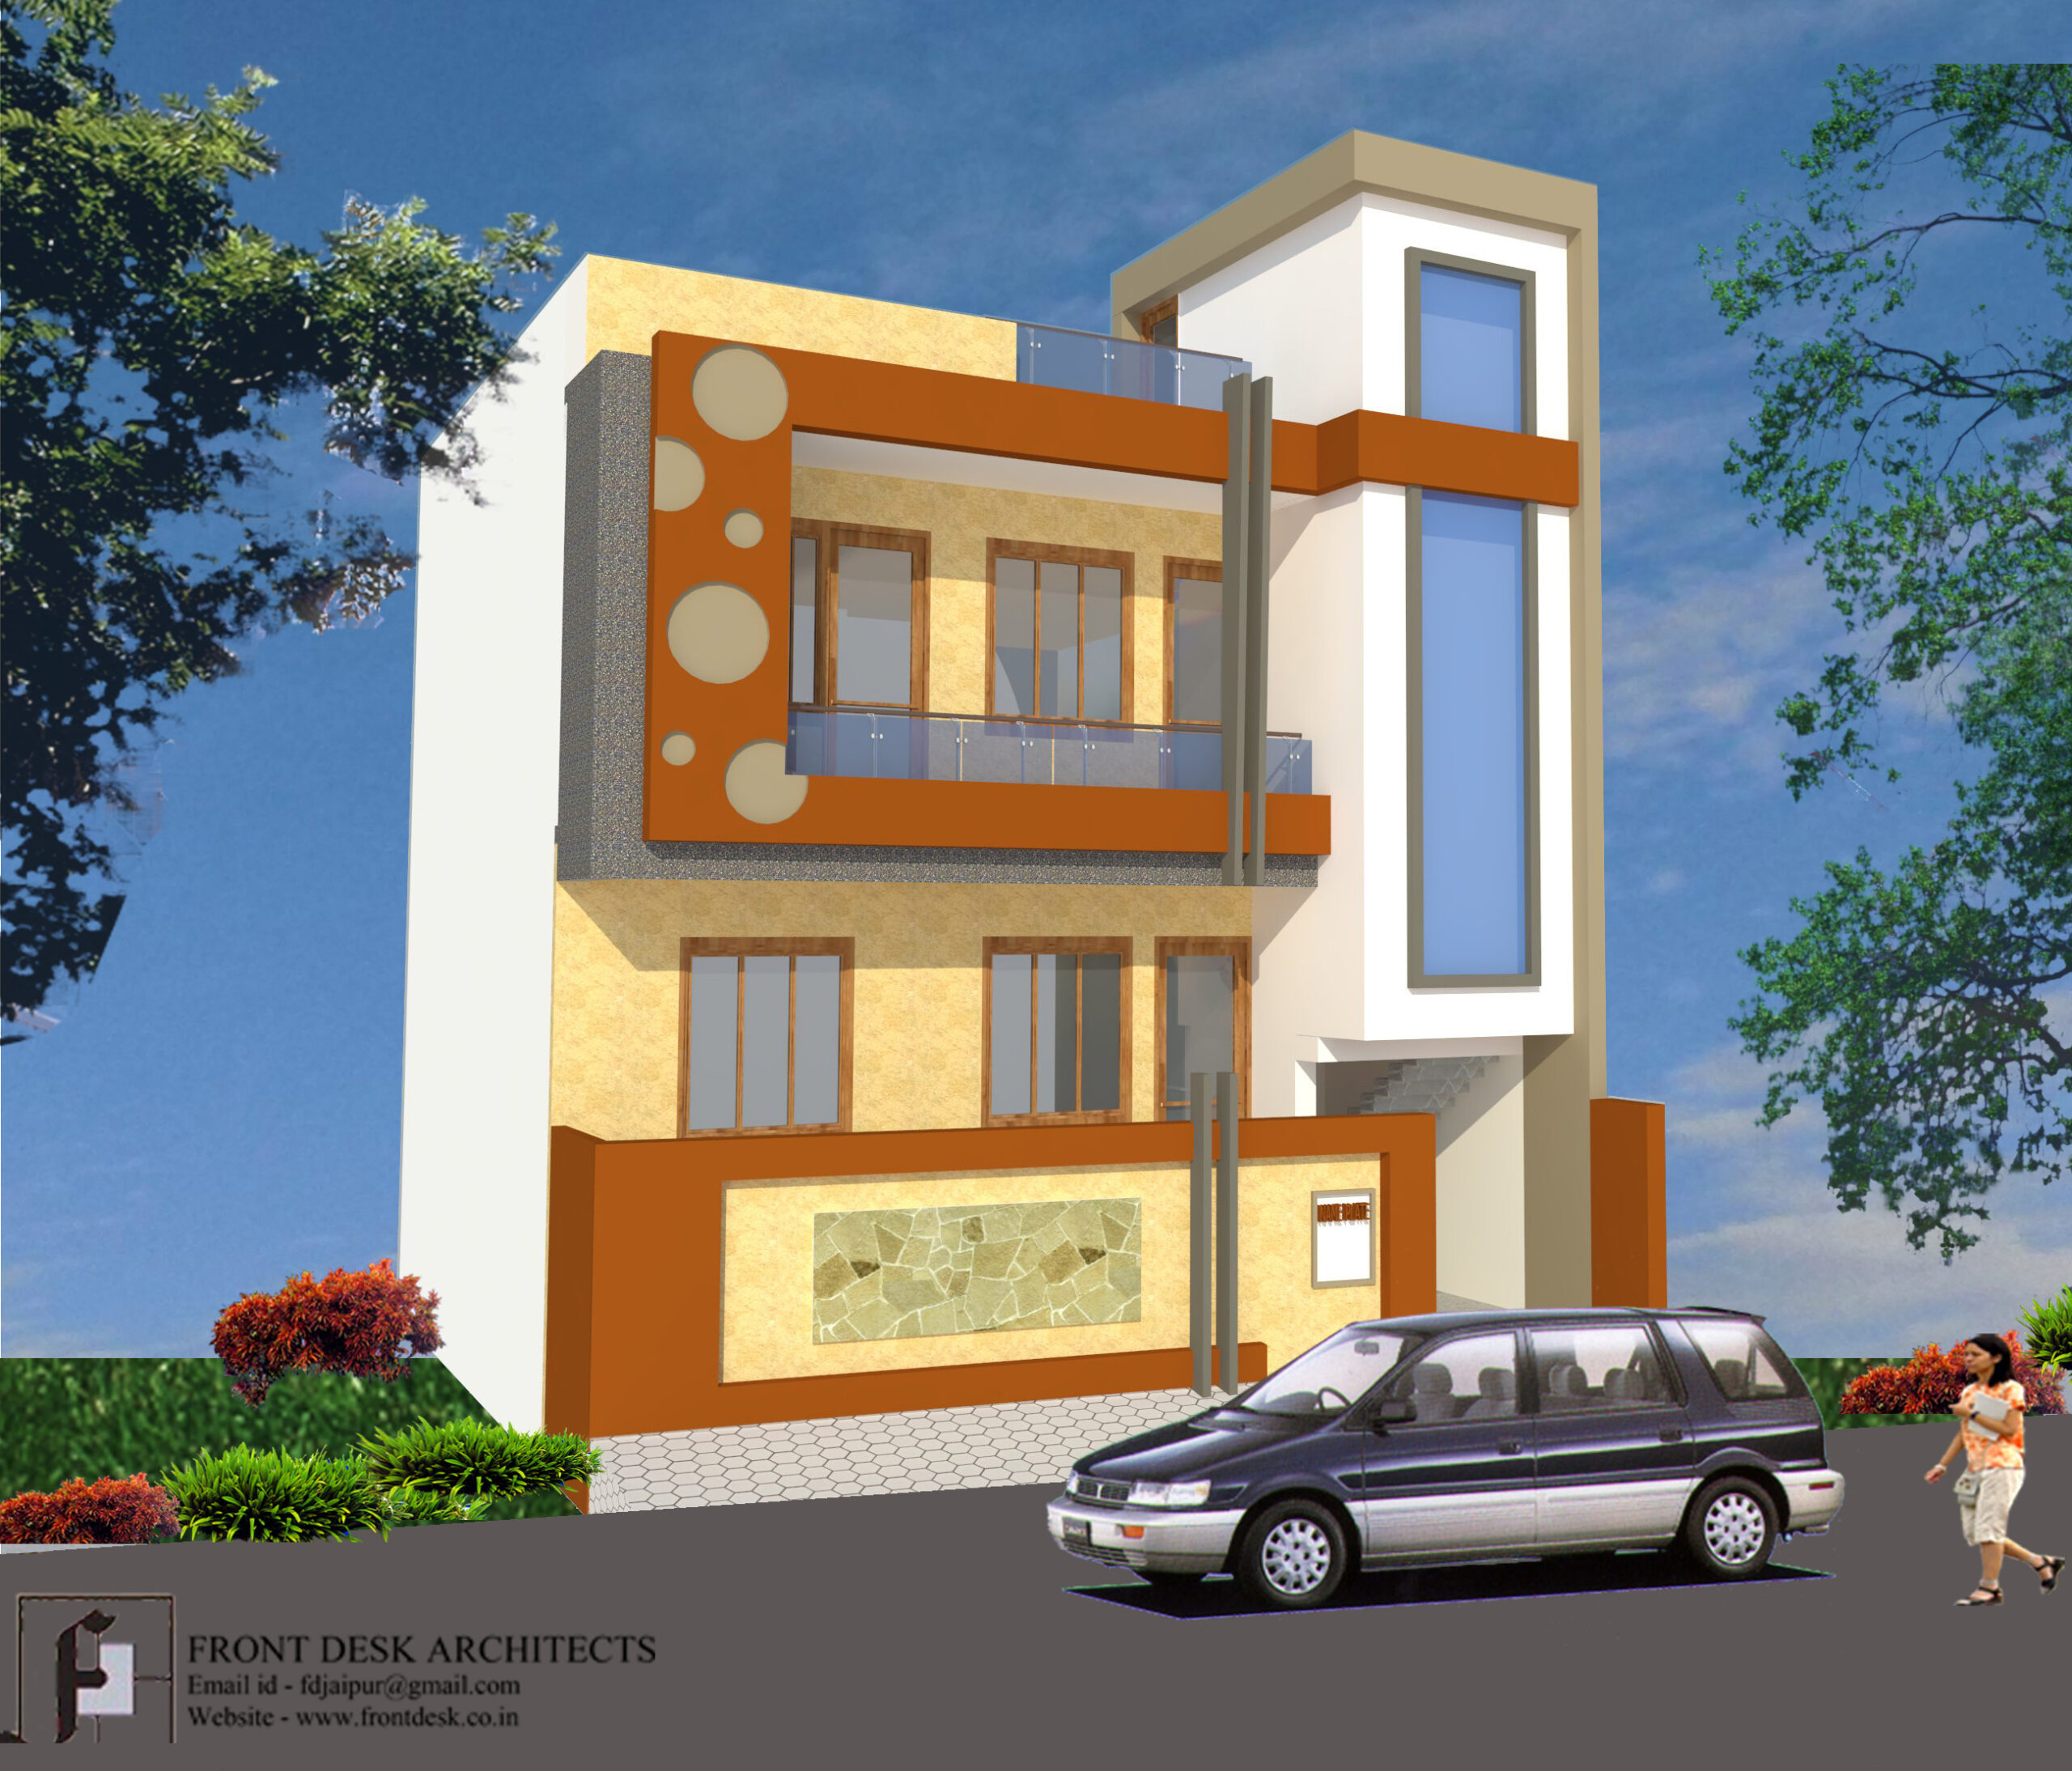 Krishnapuri Residence Designed by Front Desk Architects